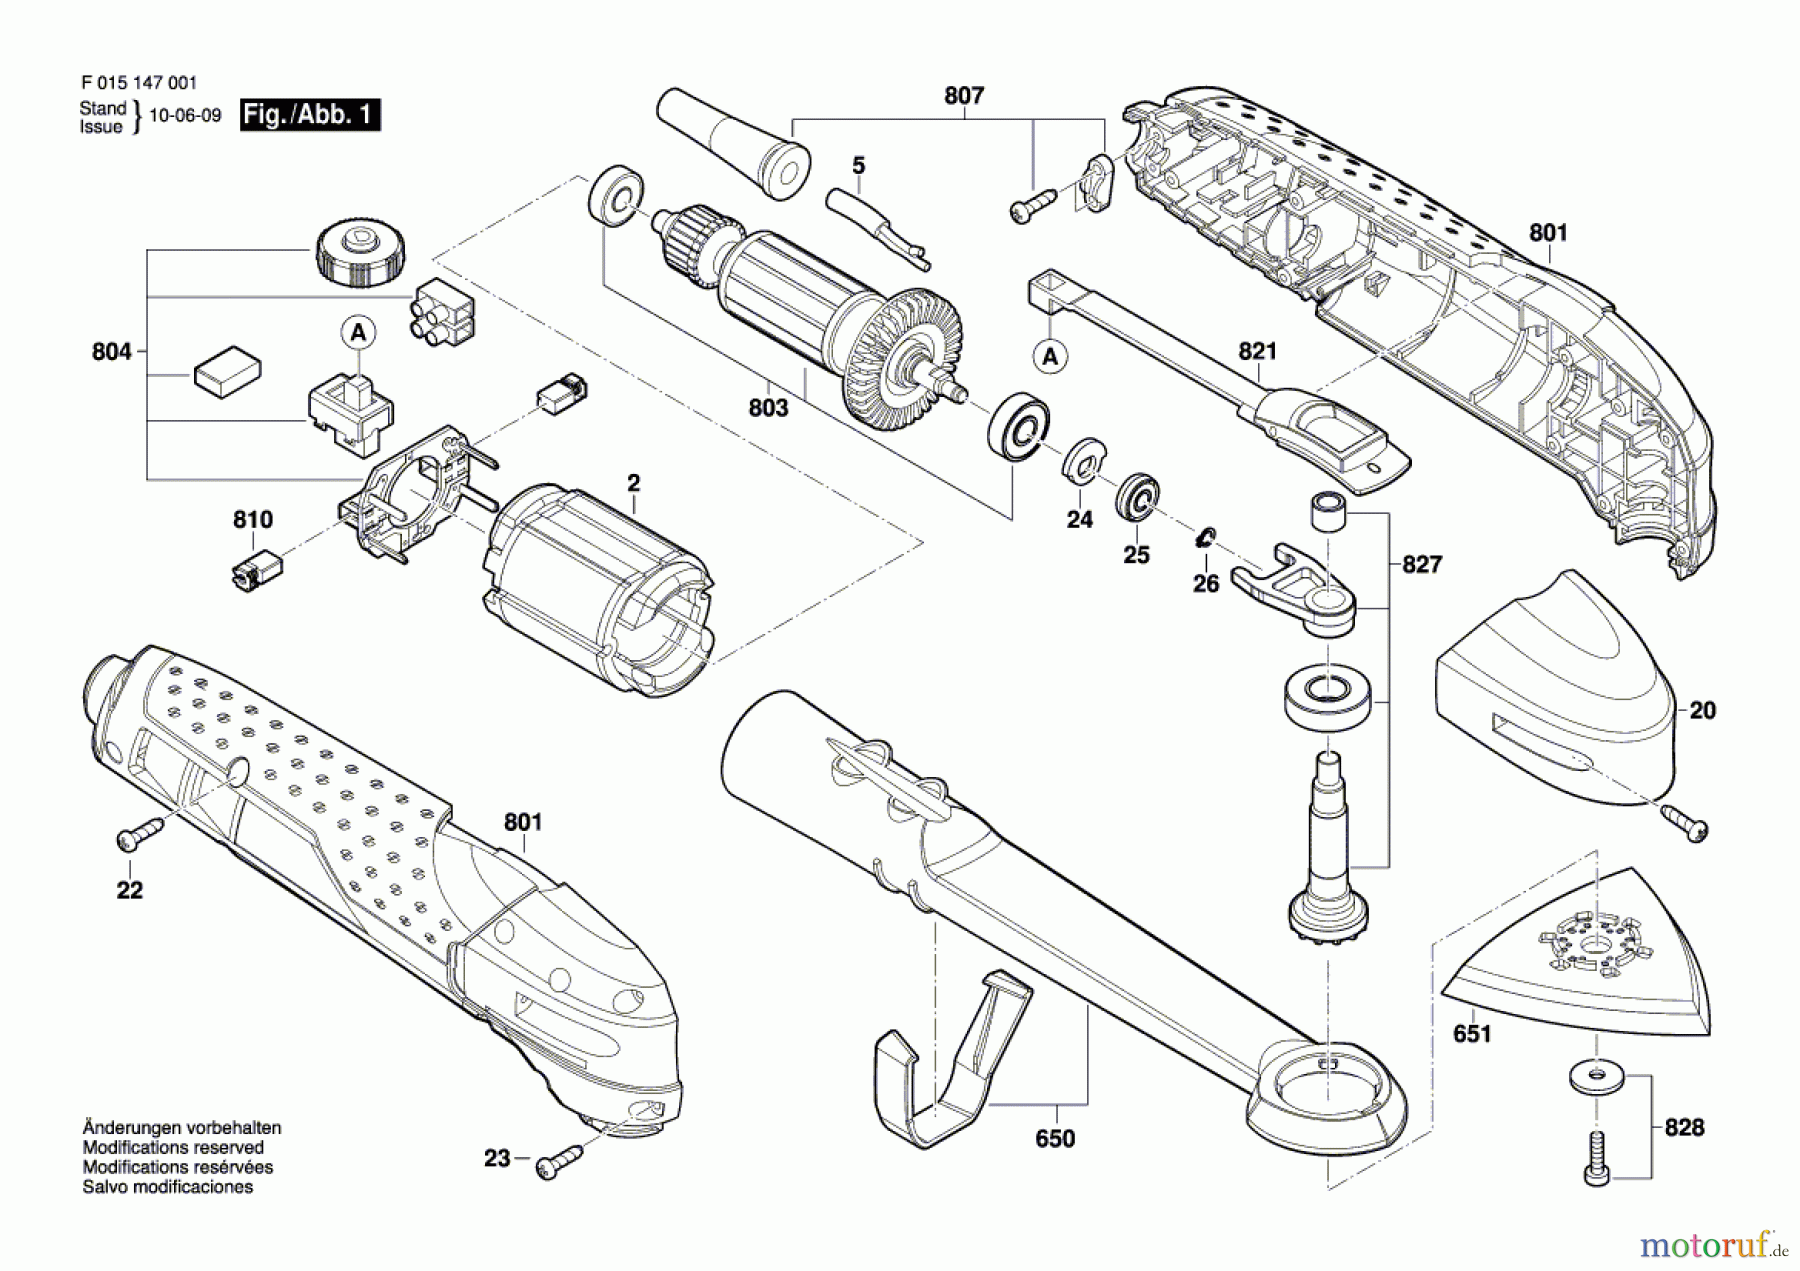  Bosch Werkzeug Multifunktionswerkzeug 1150 Seite 1